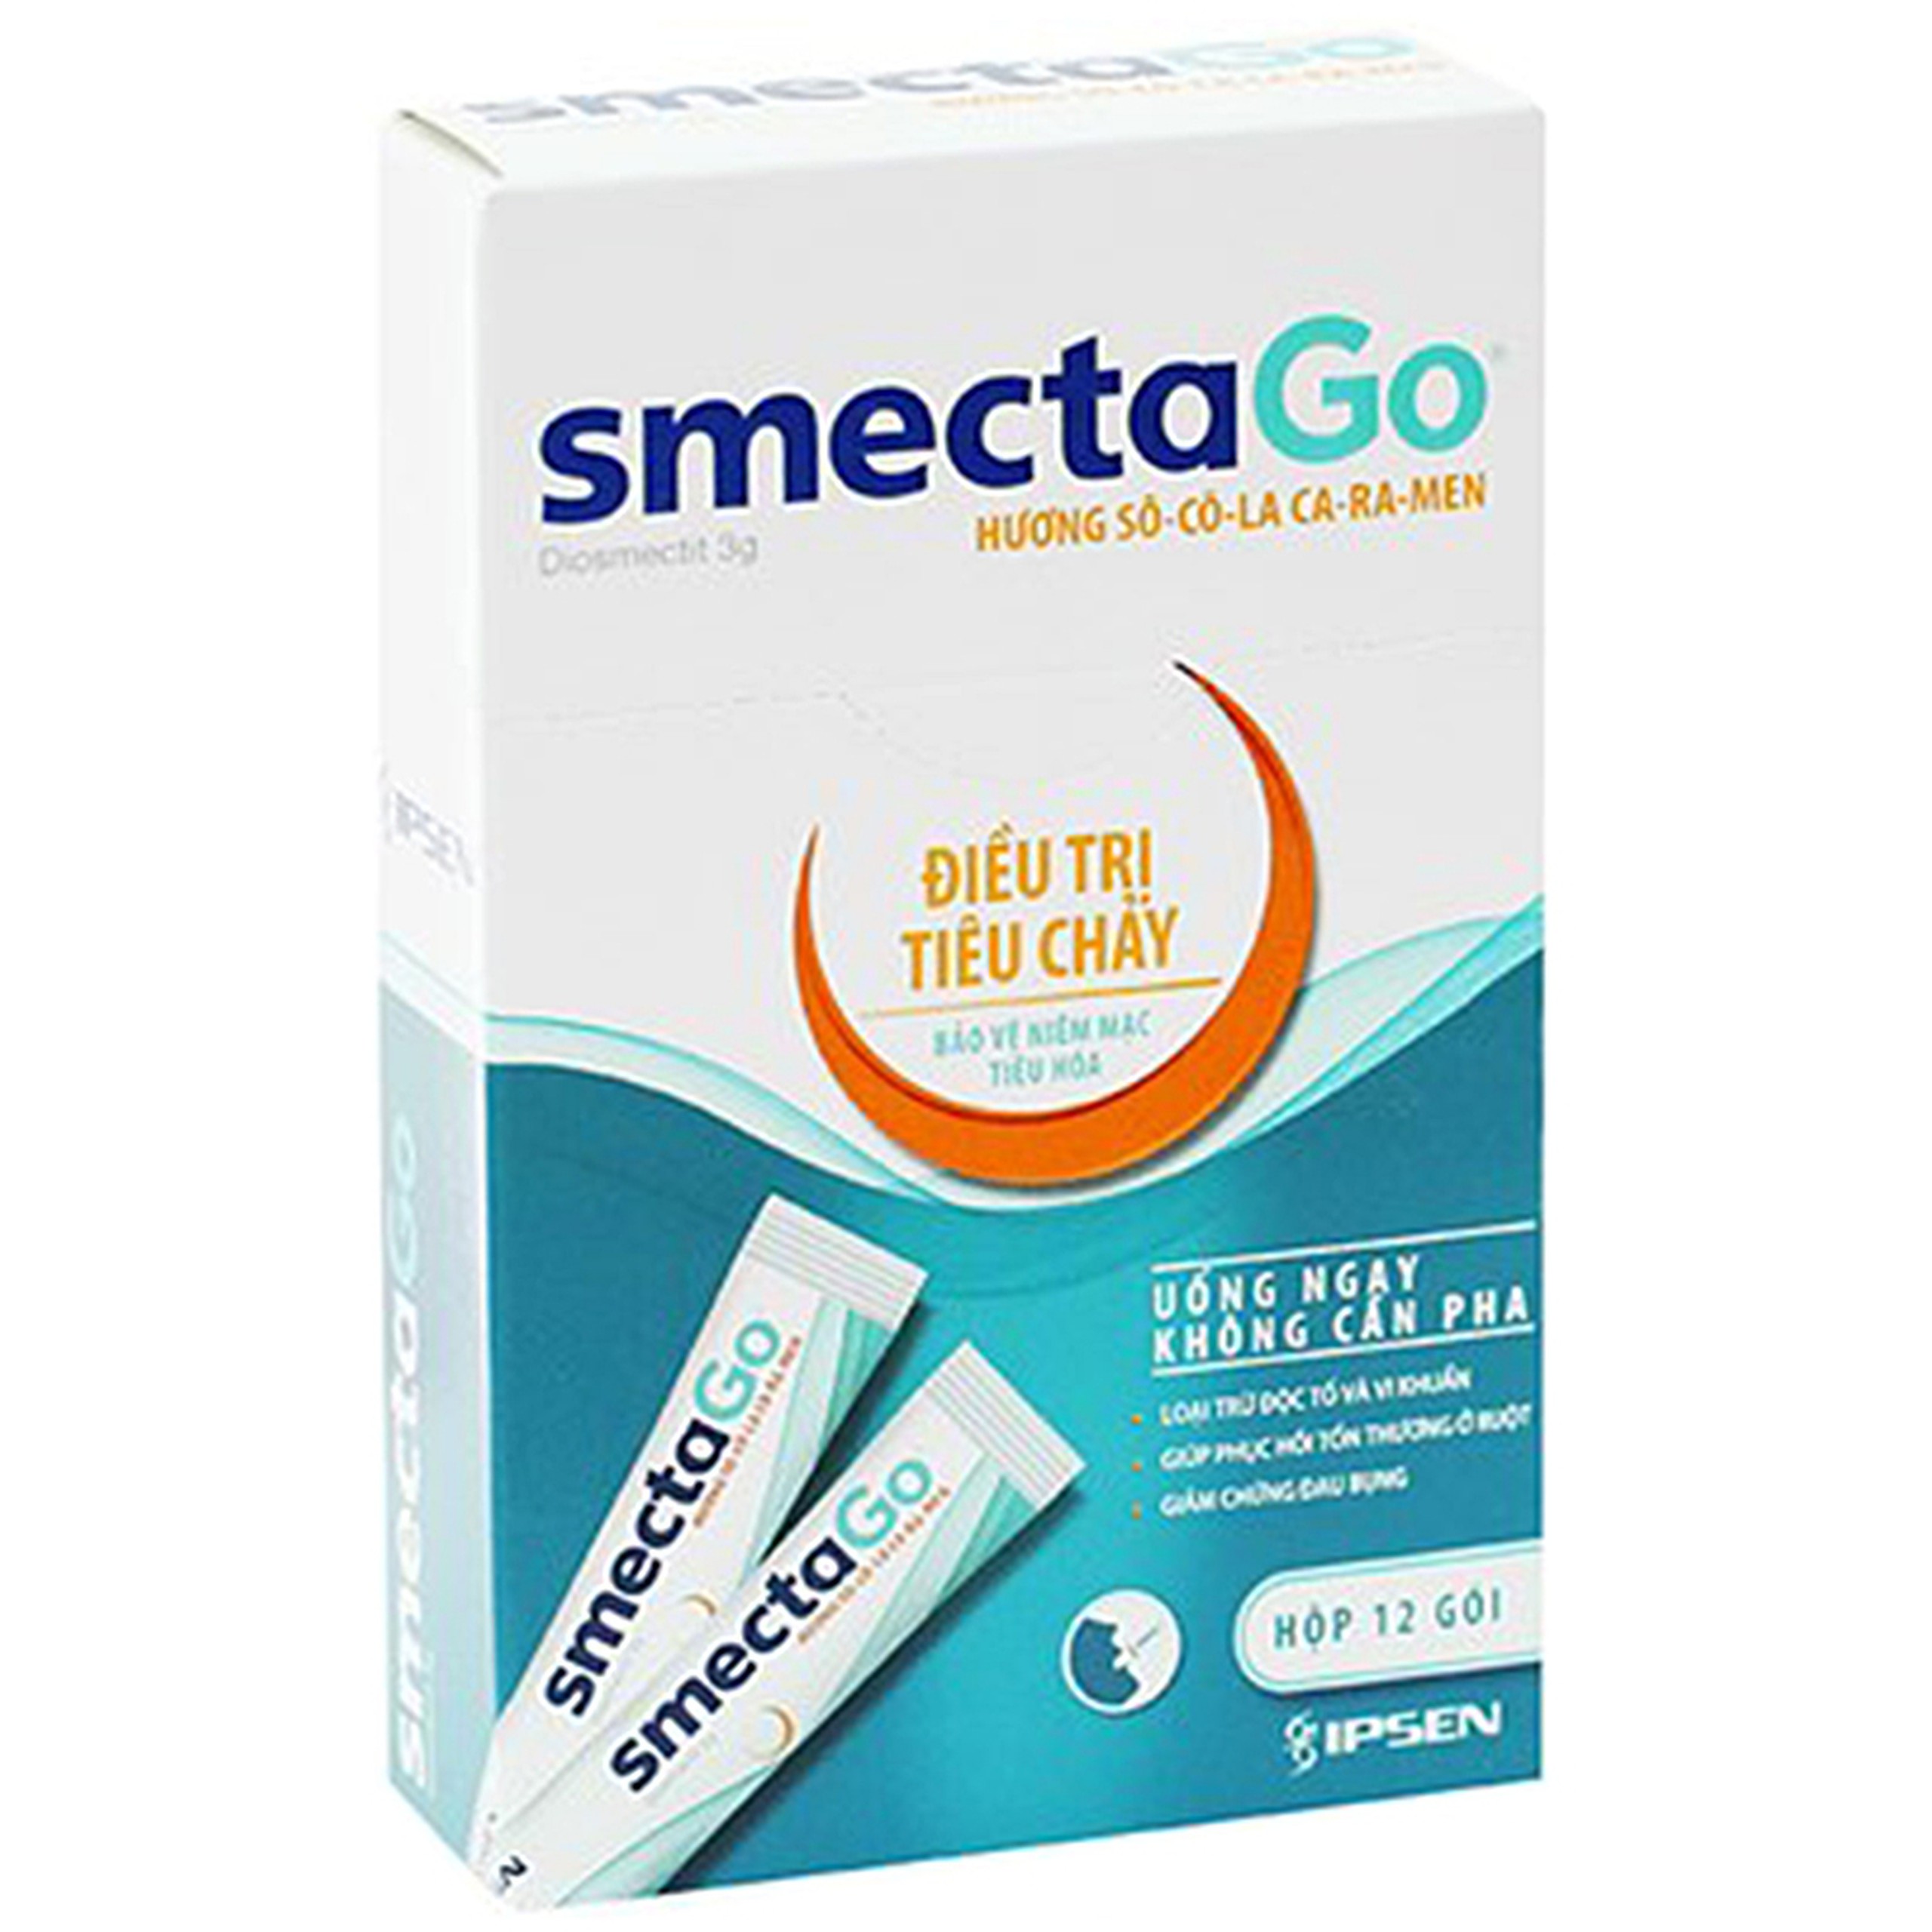 Thuốc SmectaGo hương sô-cô-la ca-ra-men điều trị tiêu chảy cấp (12 gói x 10g)